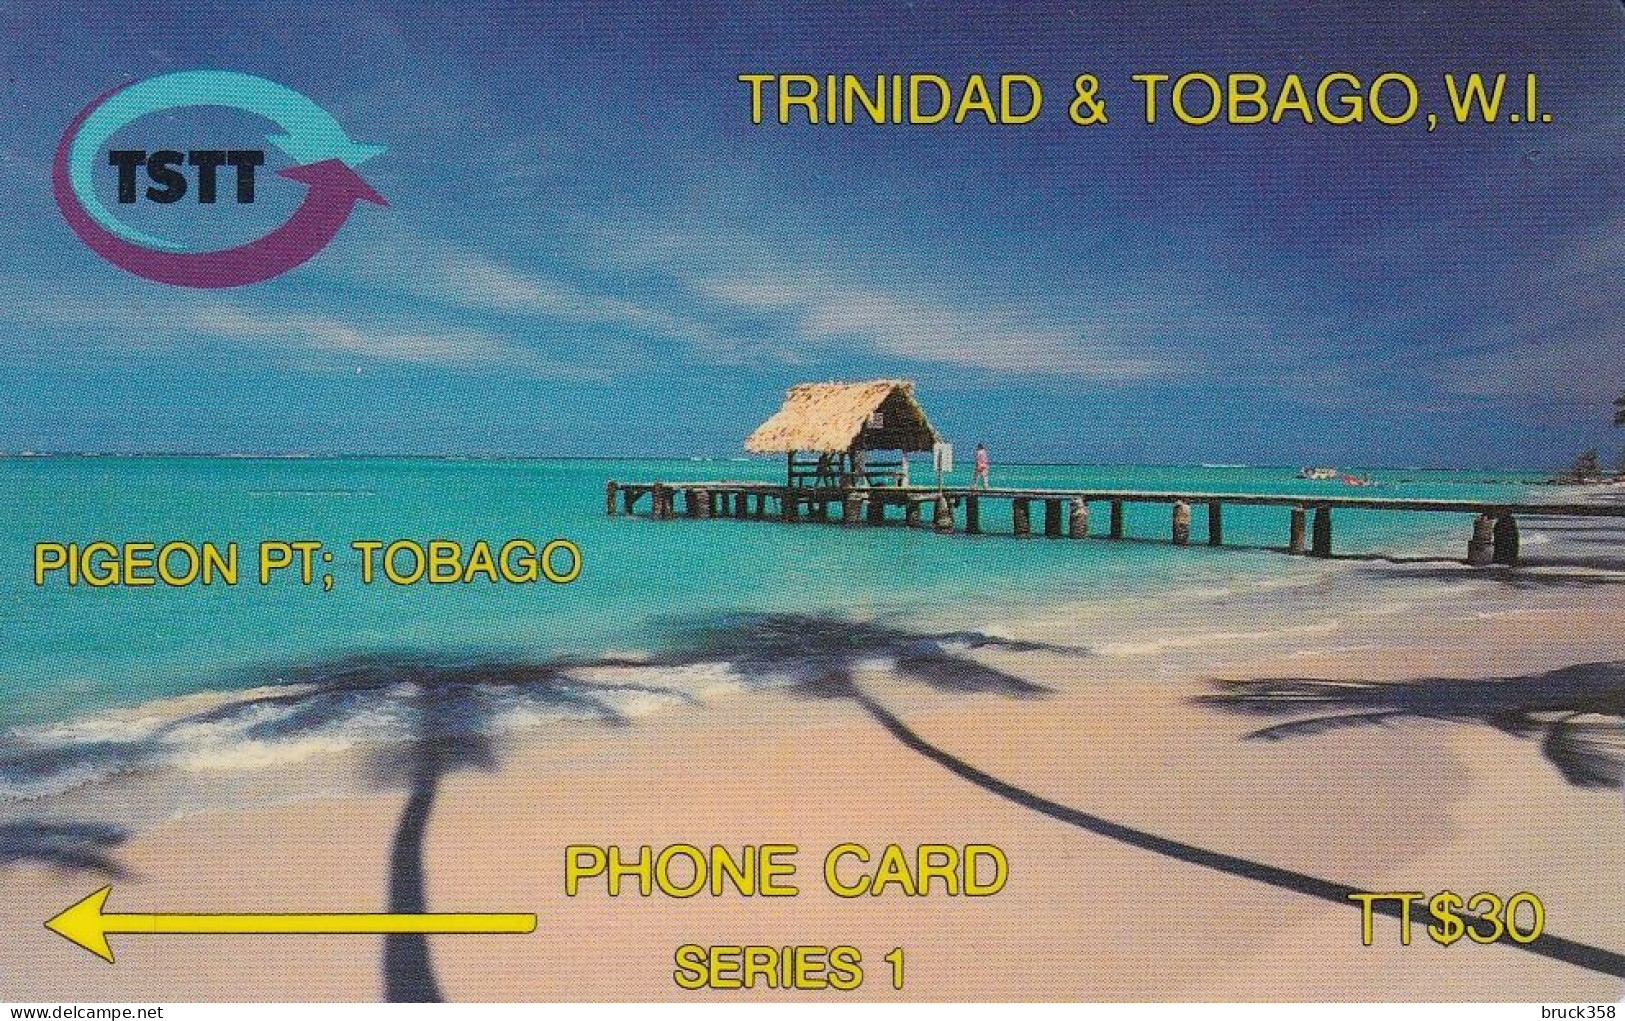 TRINIDAD - Trinidad & Tobago